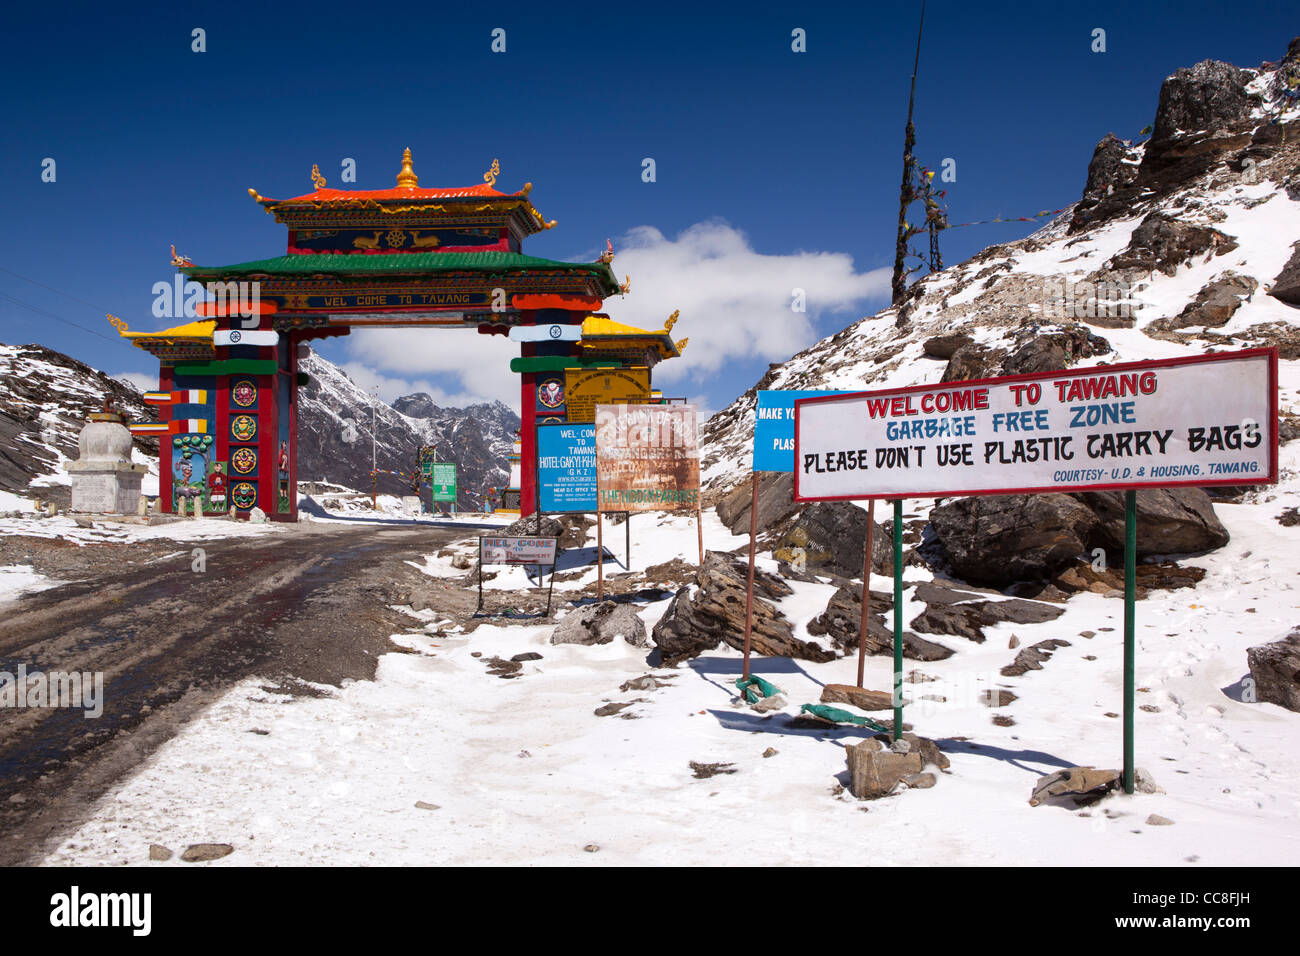 Indien, Arunachal Pradesh, Sela Pass, hoch gelegenen Straße vorbei unter bunten Tor zum Tawang, Kunststoff Freizone Zeichen Stockfoto